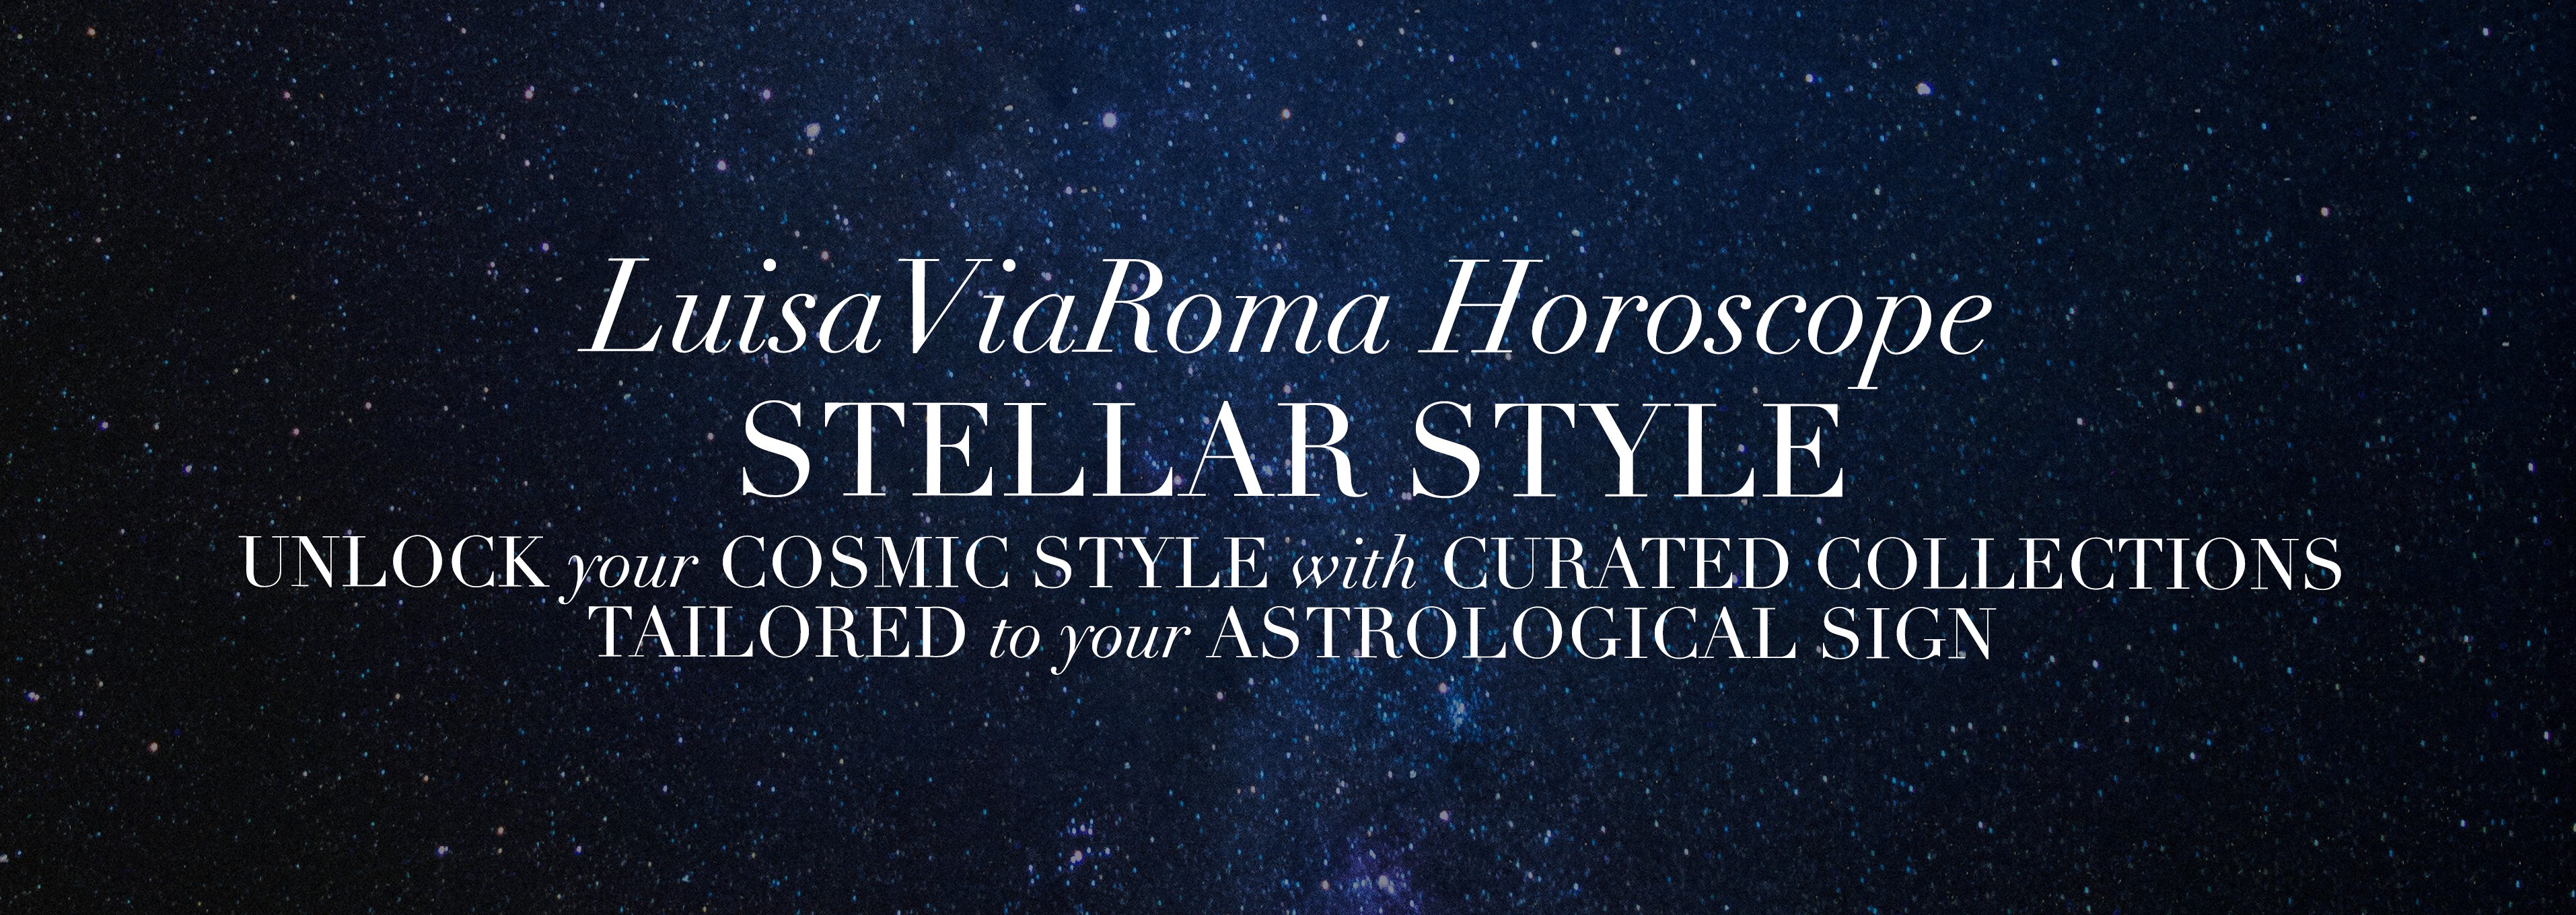 Stile e stelle: l’oroscopo di LuisaViaRoma